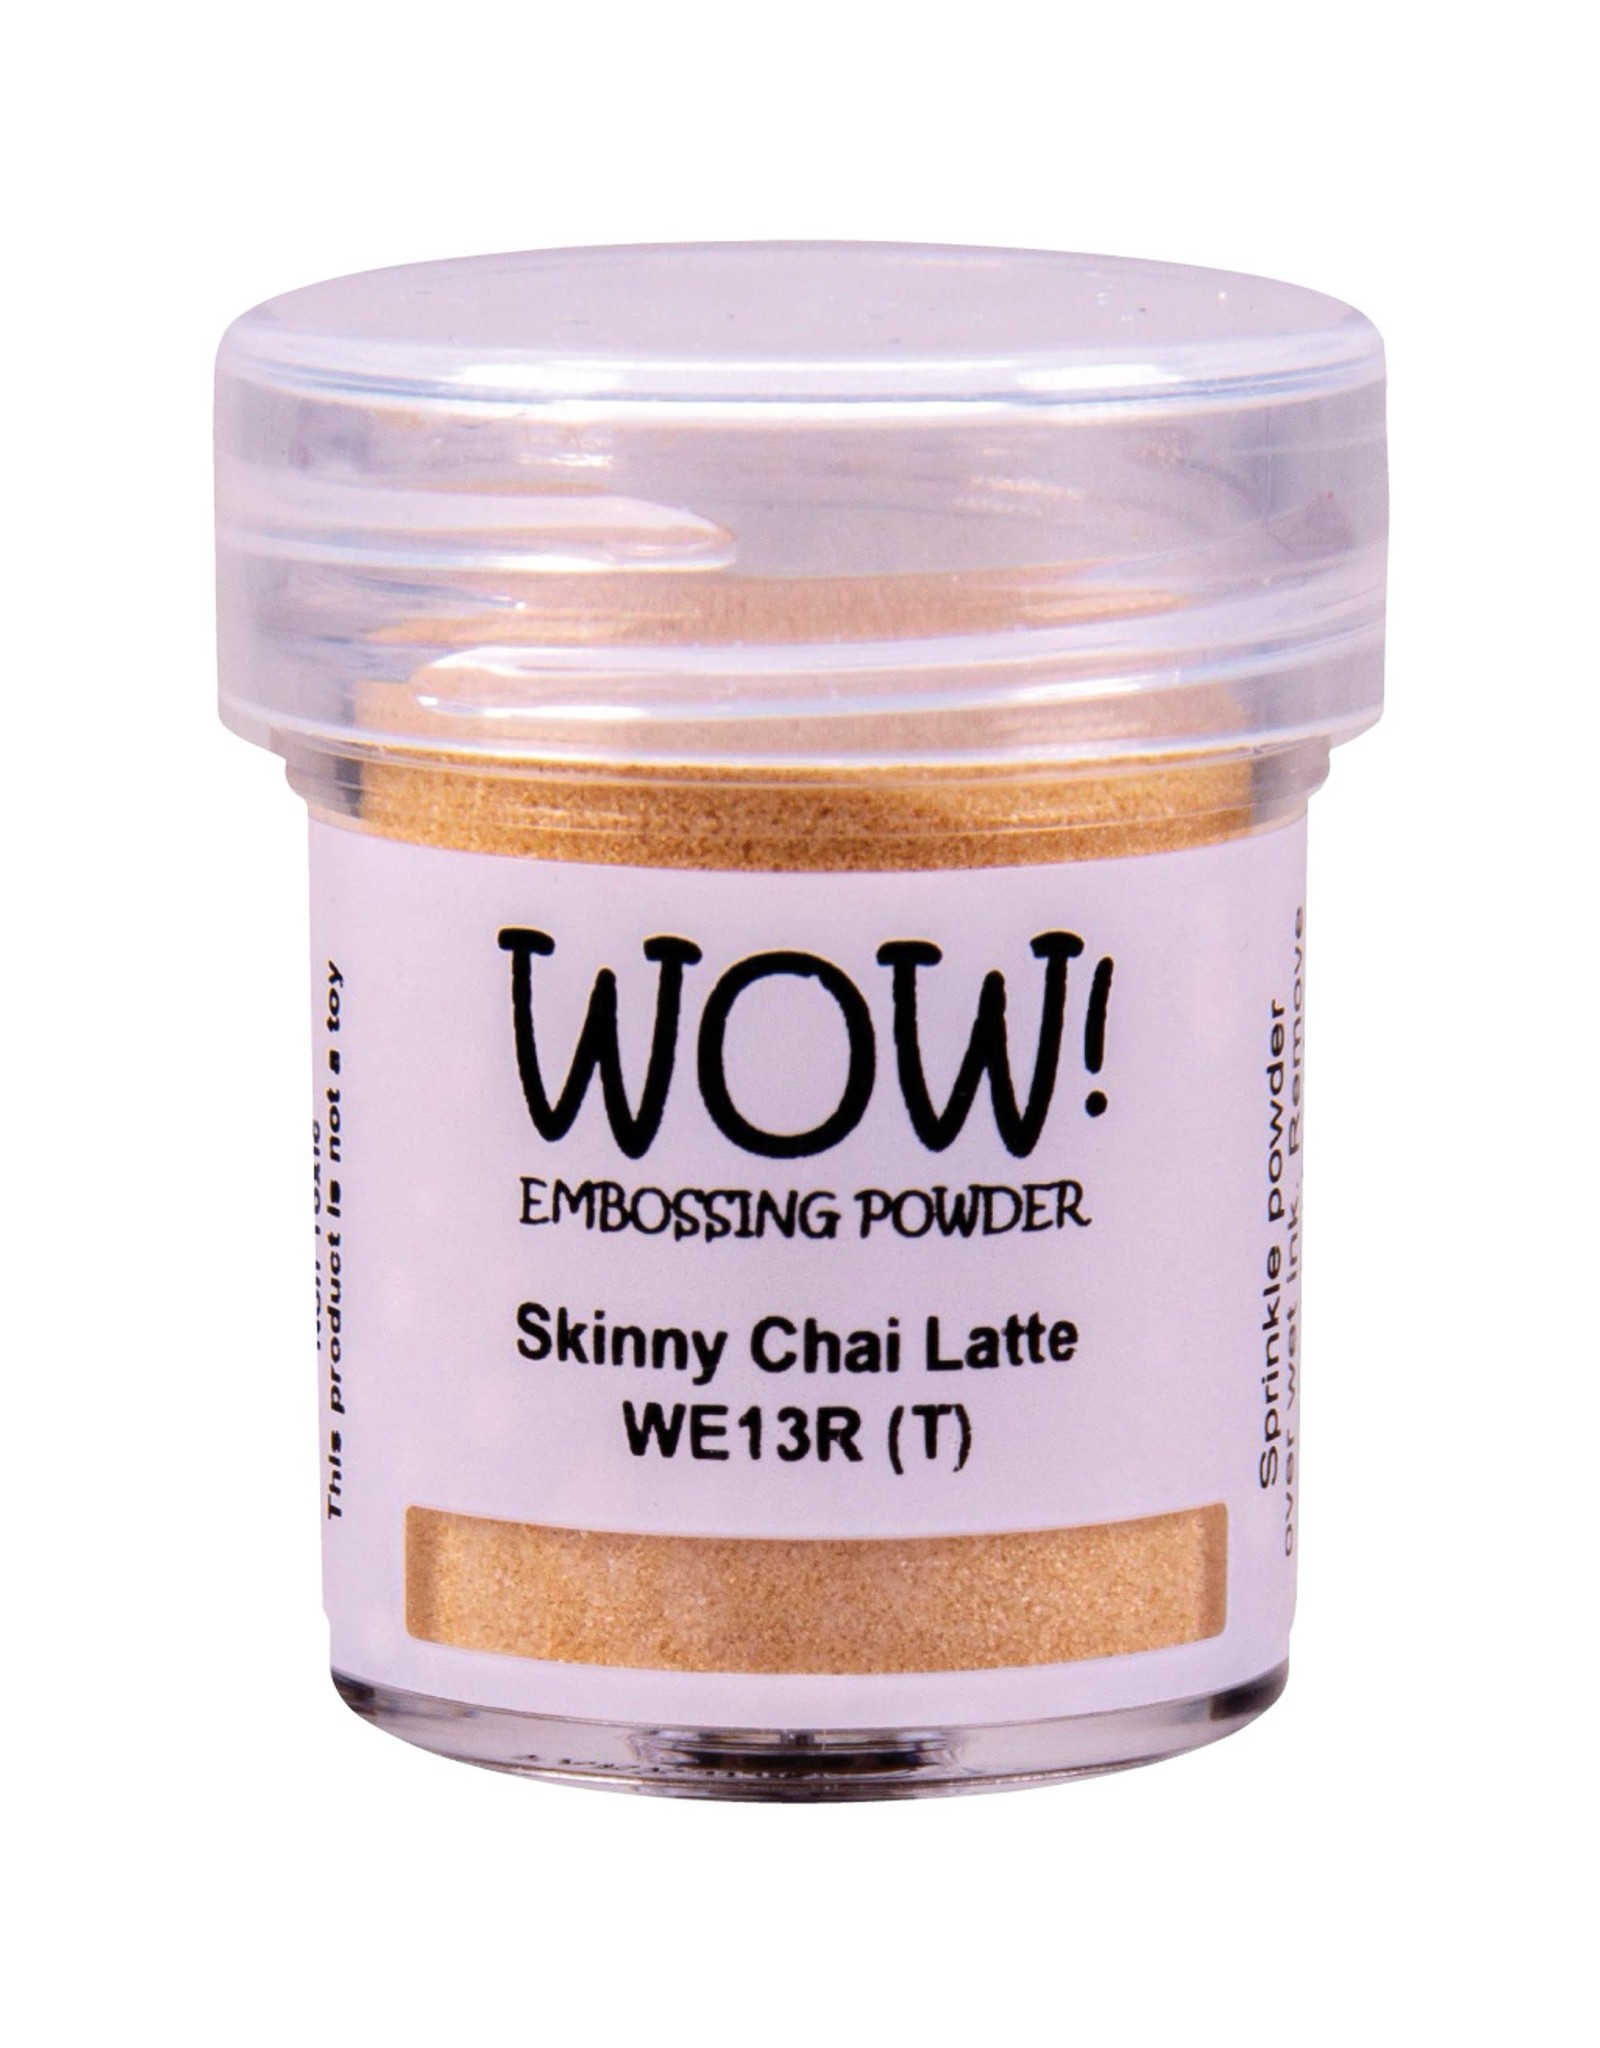 WOW! WOW Embossing Powder - Skinny Chai Latte